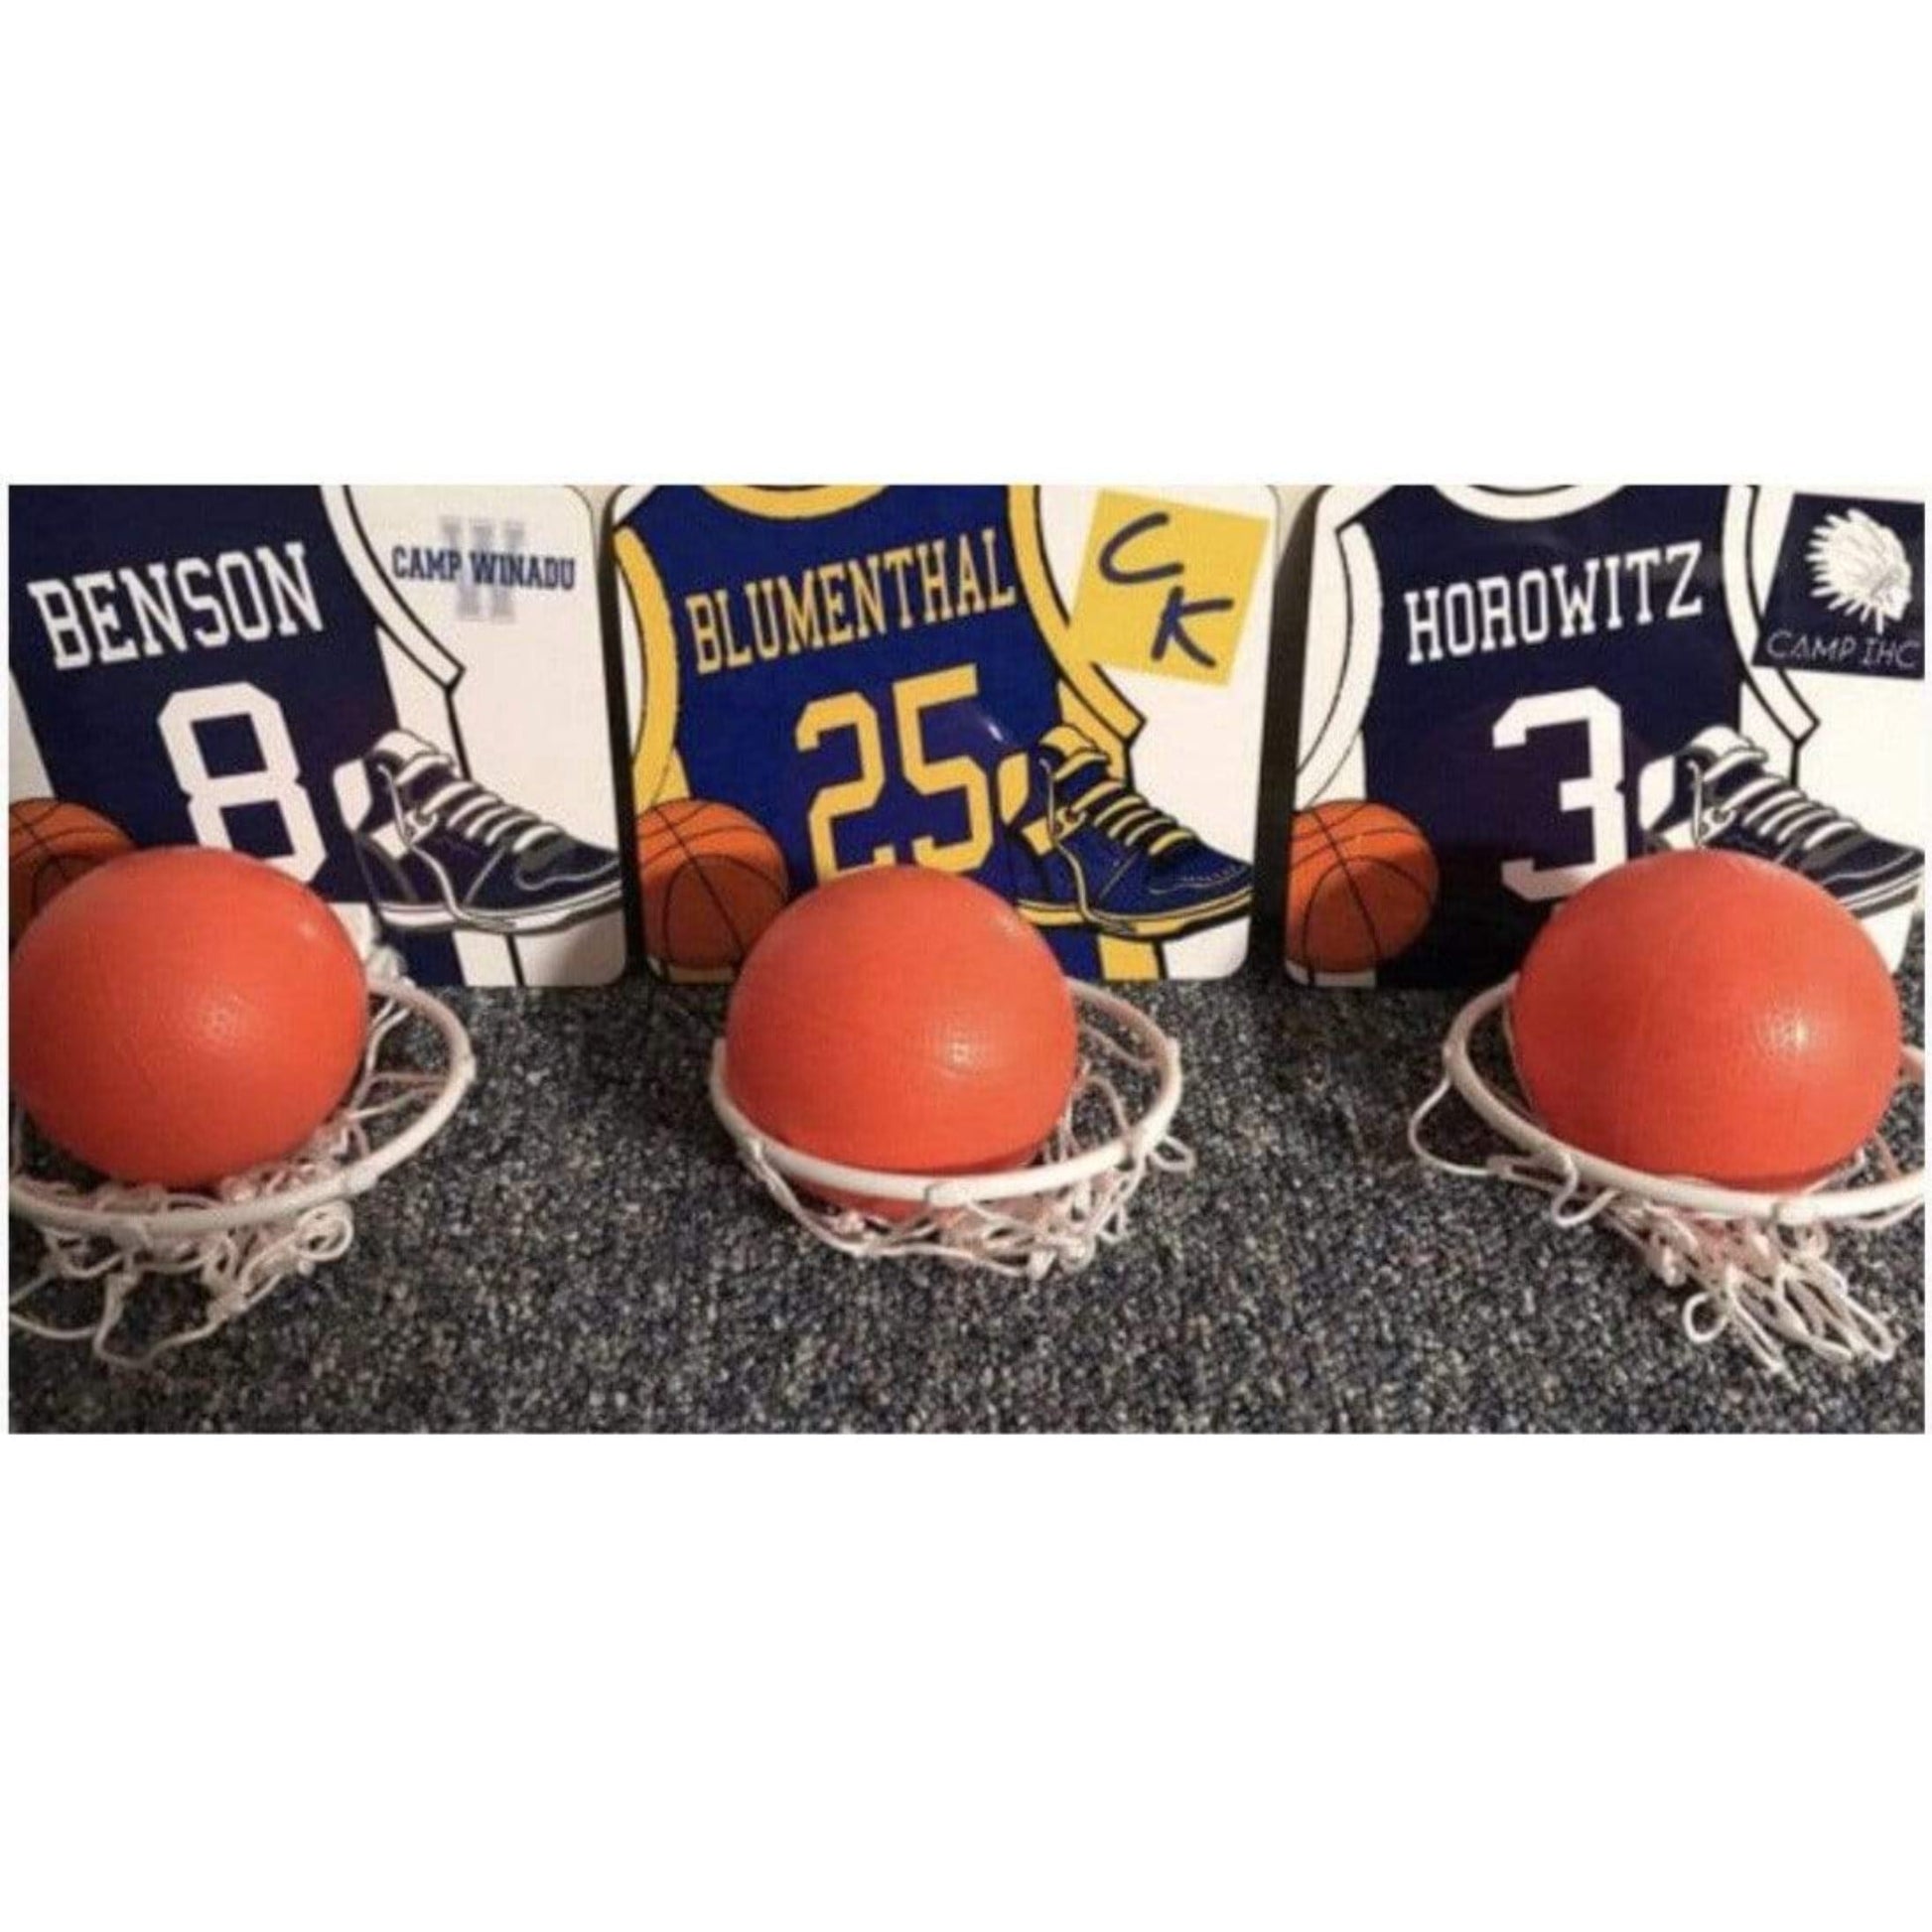 Custom Basketball Set - a Spirit Animal - Custom Basketball Net $30-$60 Basketball Net Camp